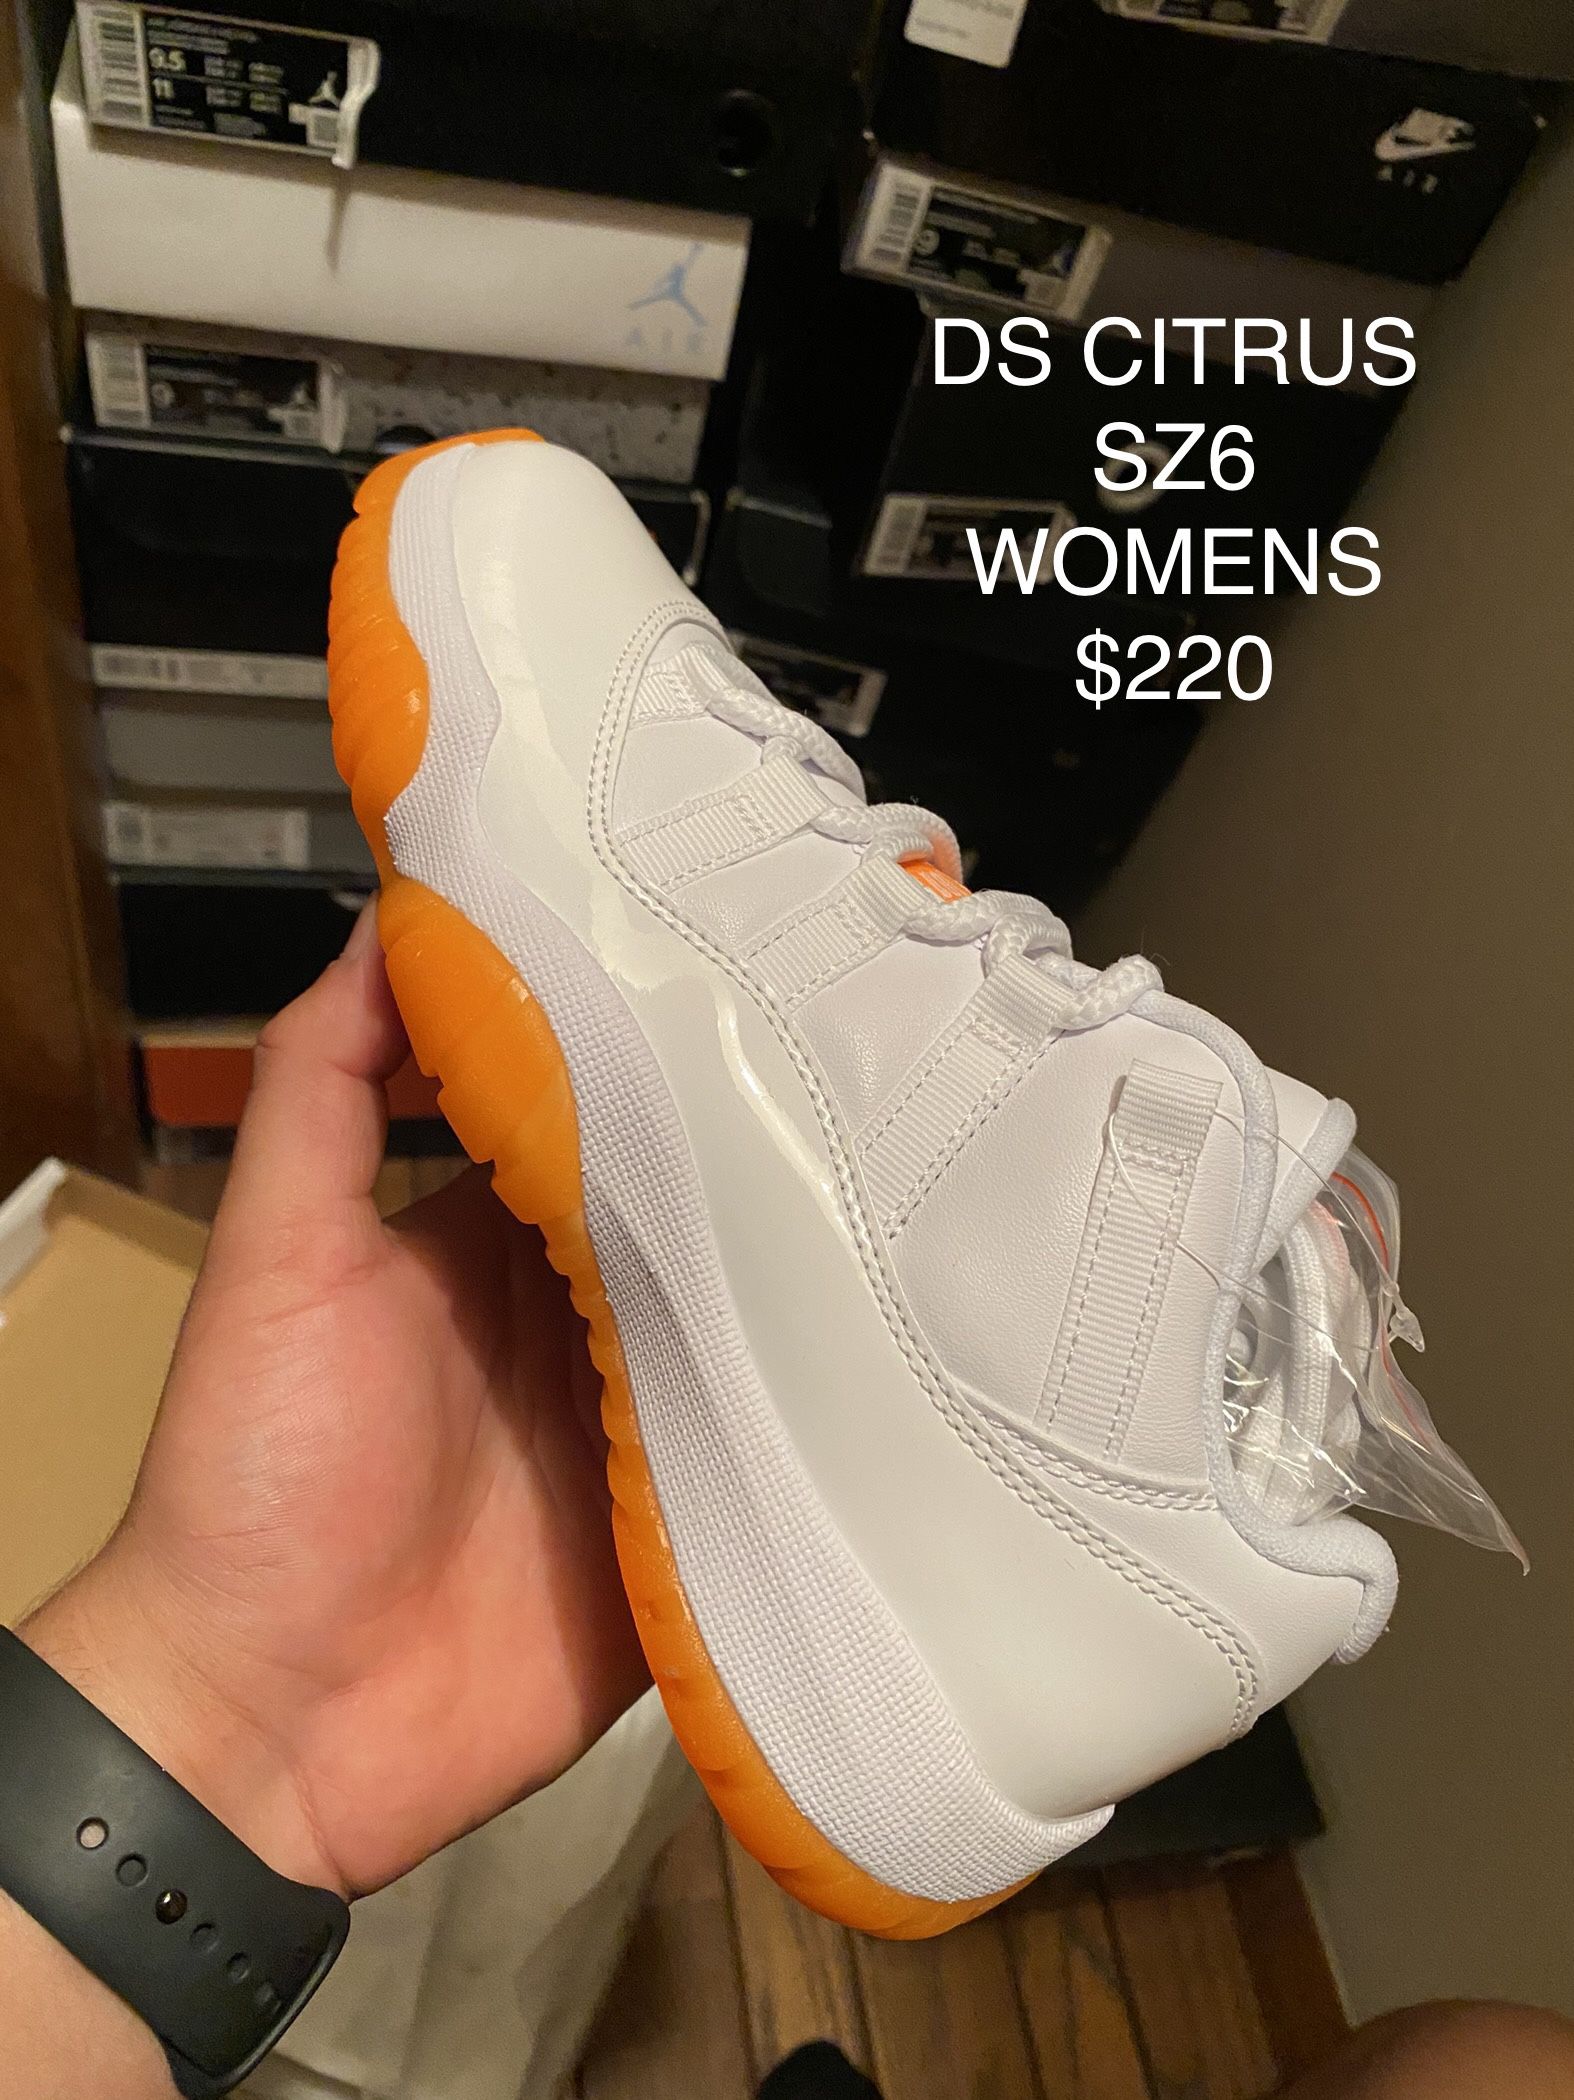 Jordan 11 ‘Citrus’ Low DS SZ6 Womens